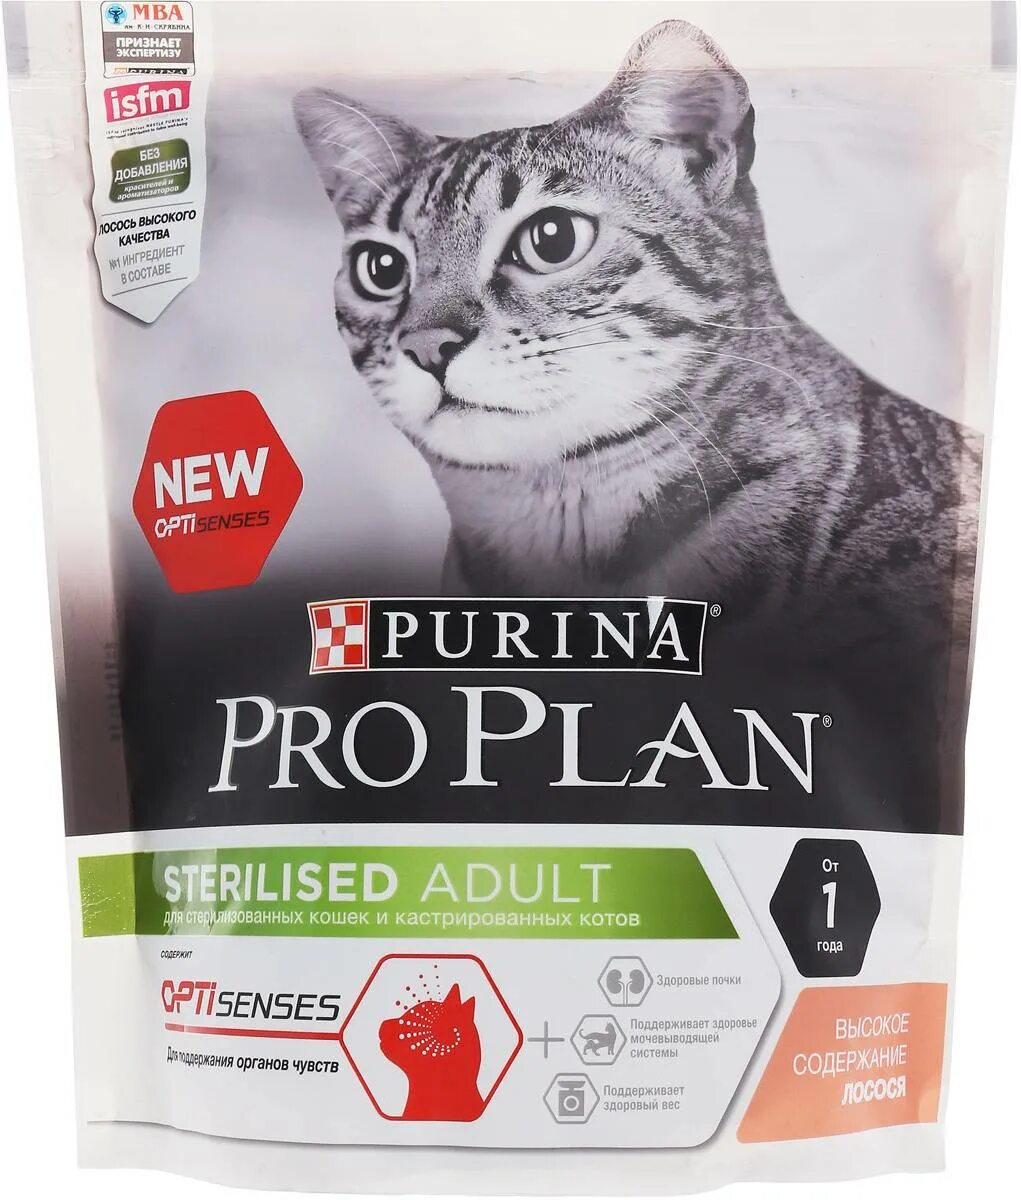 Корм для кошек Пурина Проплан для стерилизованных. Пурина про план корм для кошек стерилизованных сухой Проплан. Корм для кошек Пурина Проплан для стерилизованных кошек. Purina PROPLAN для кастрированных кошек. Pro plan для кошек стерилизованных 10 кг